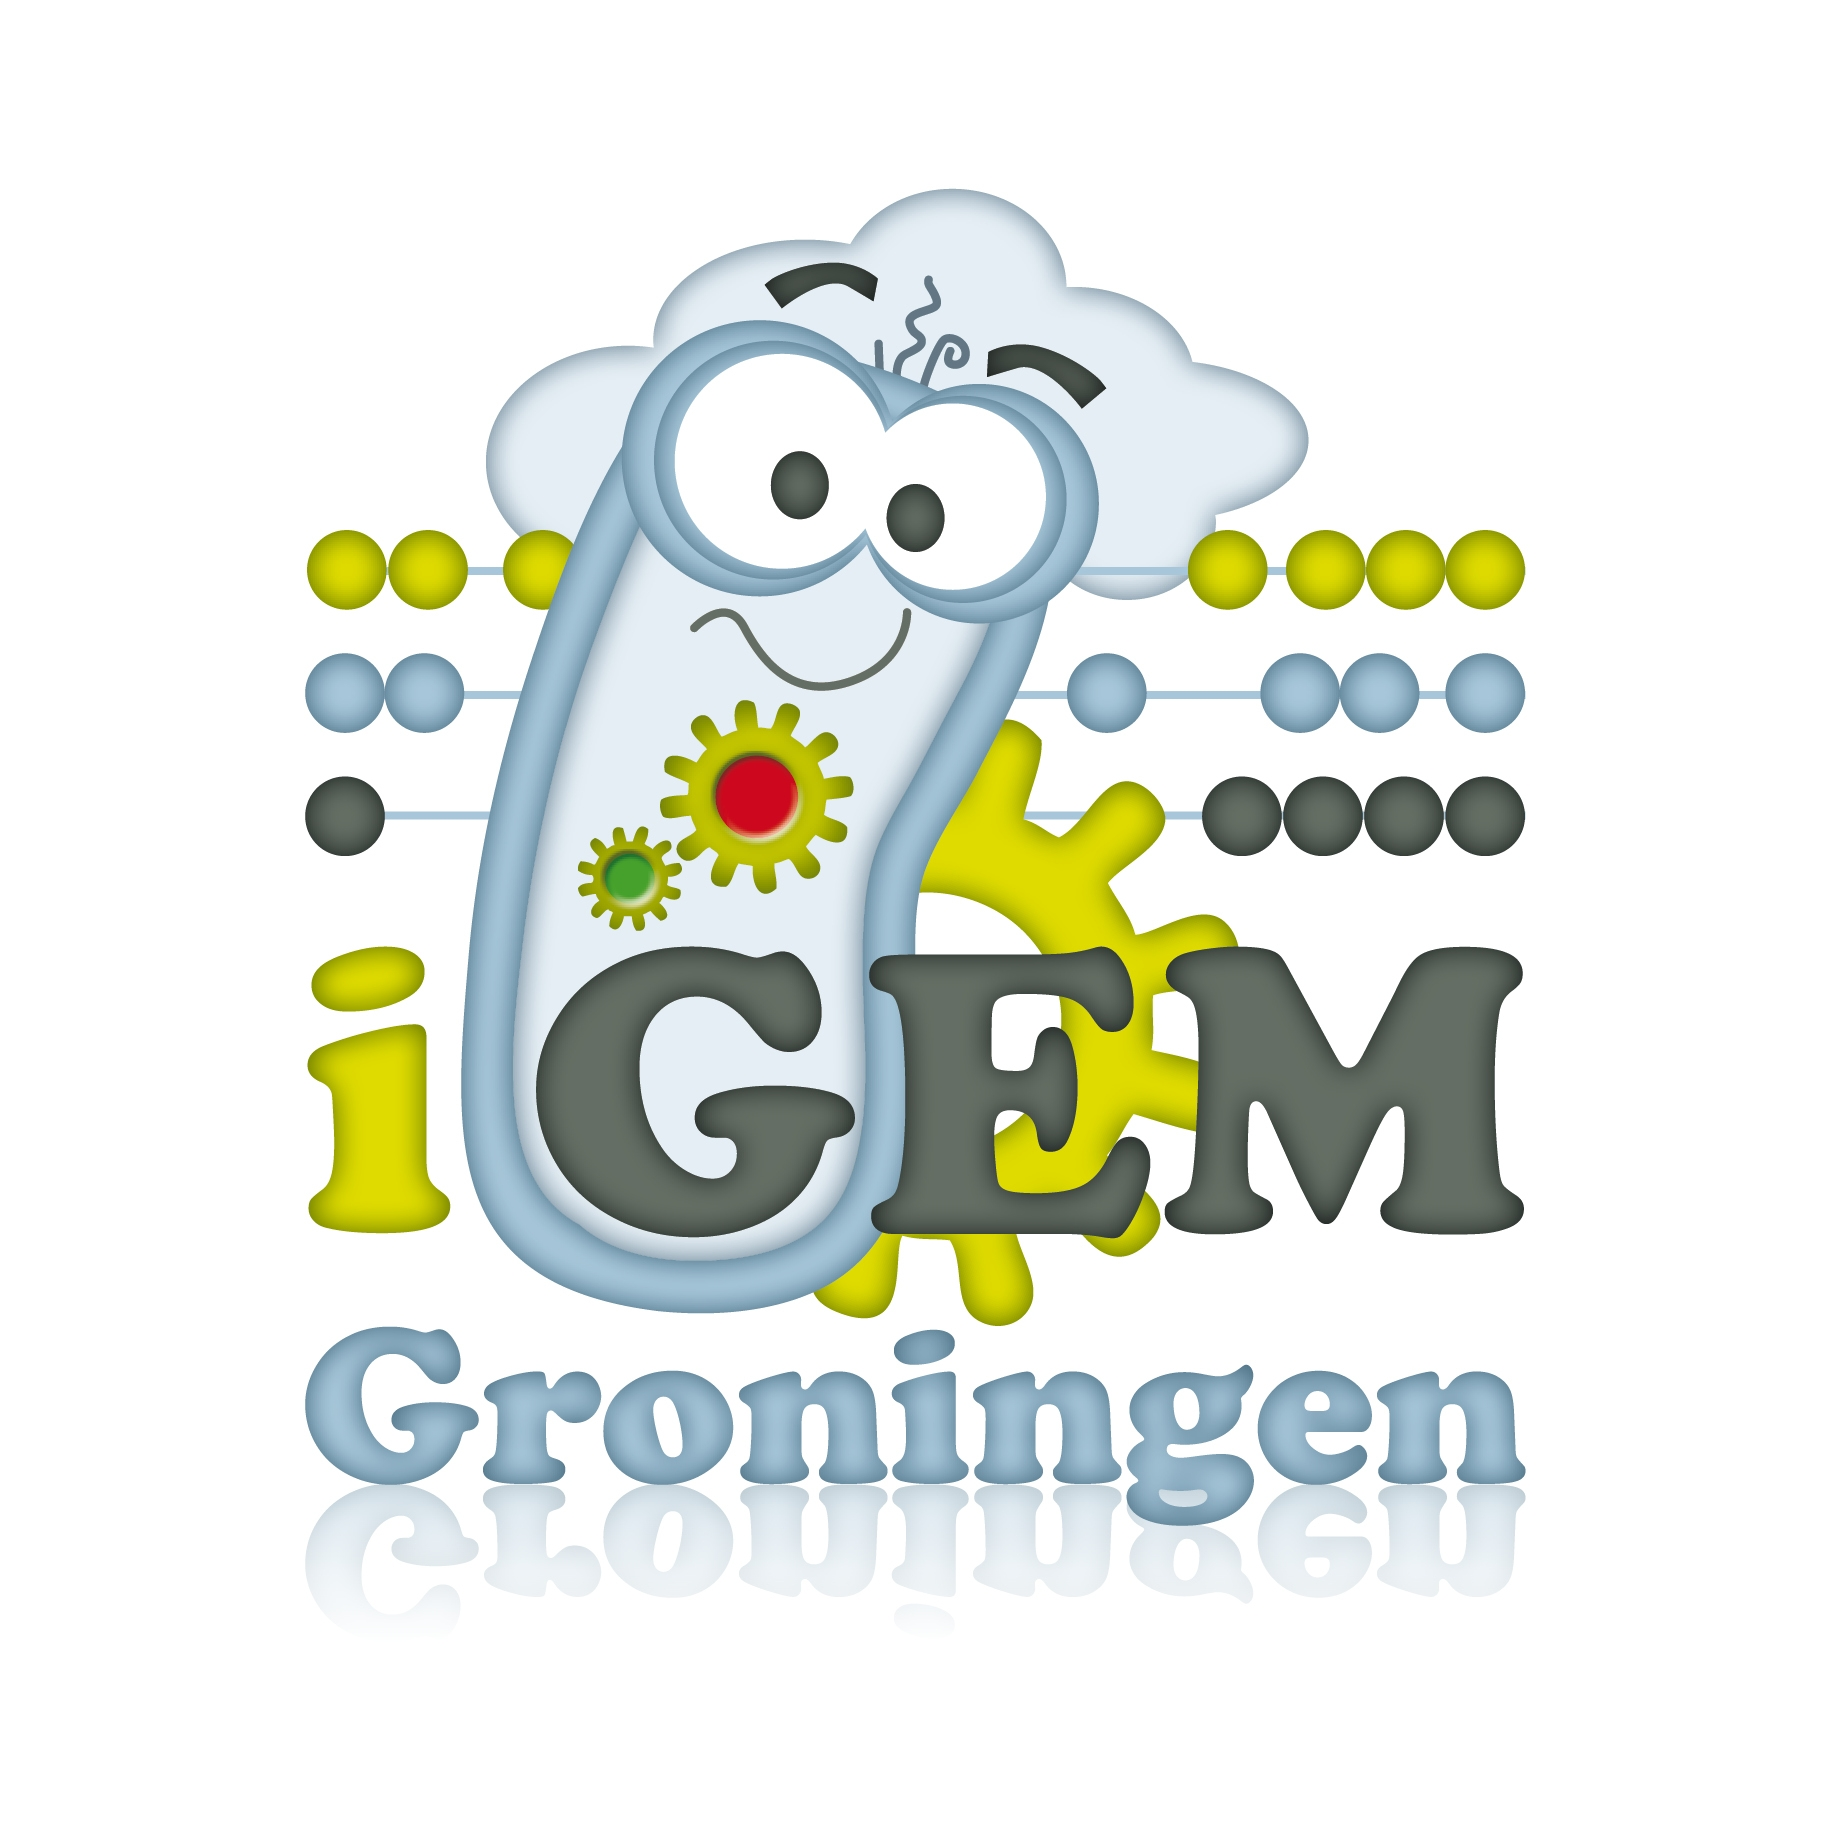 Groningen logo.png